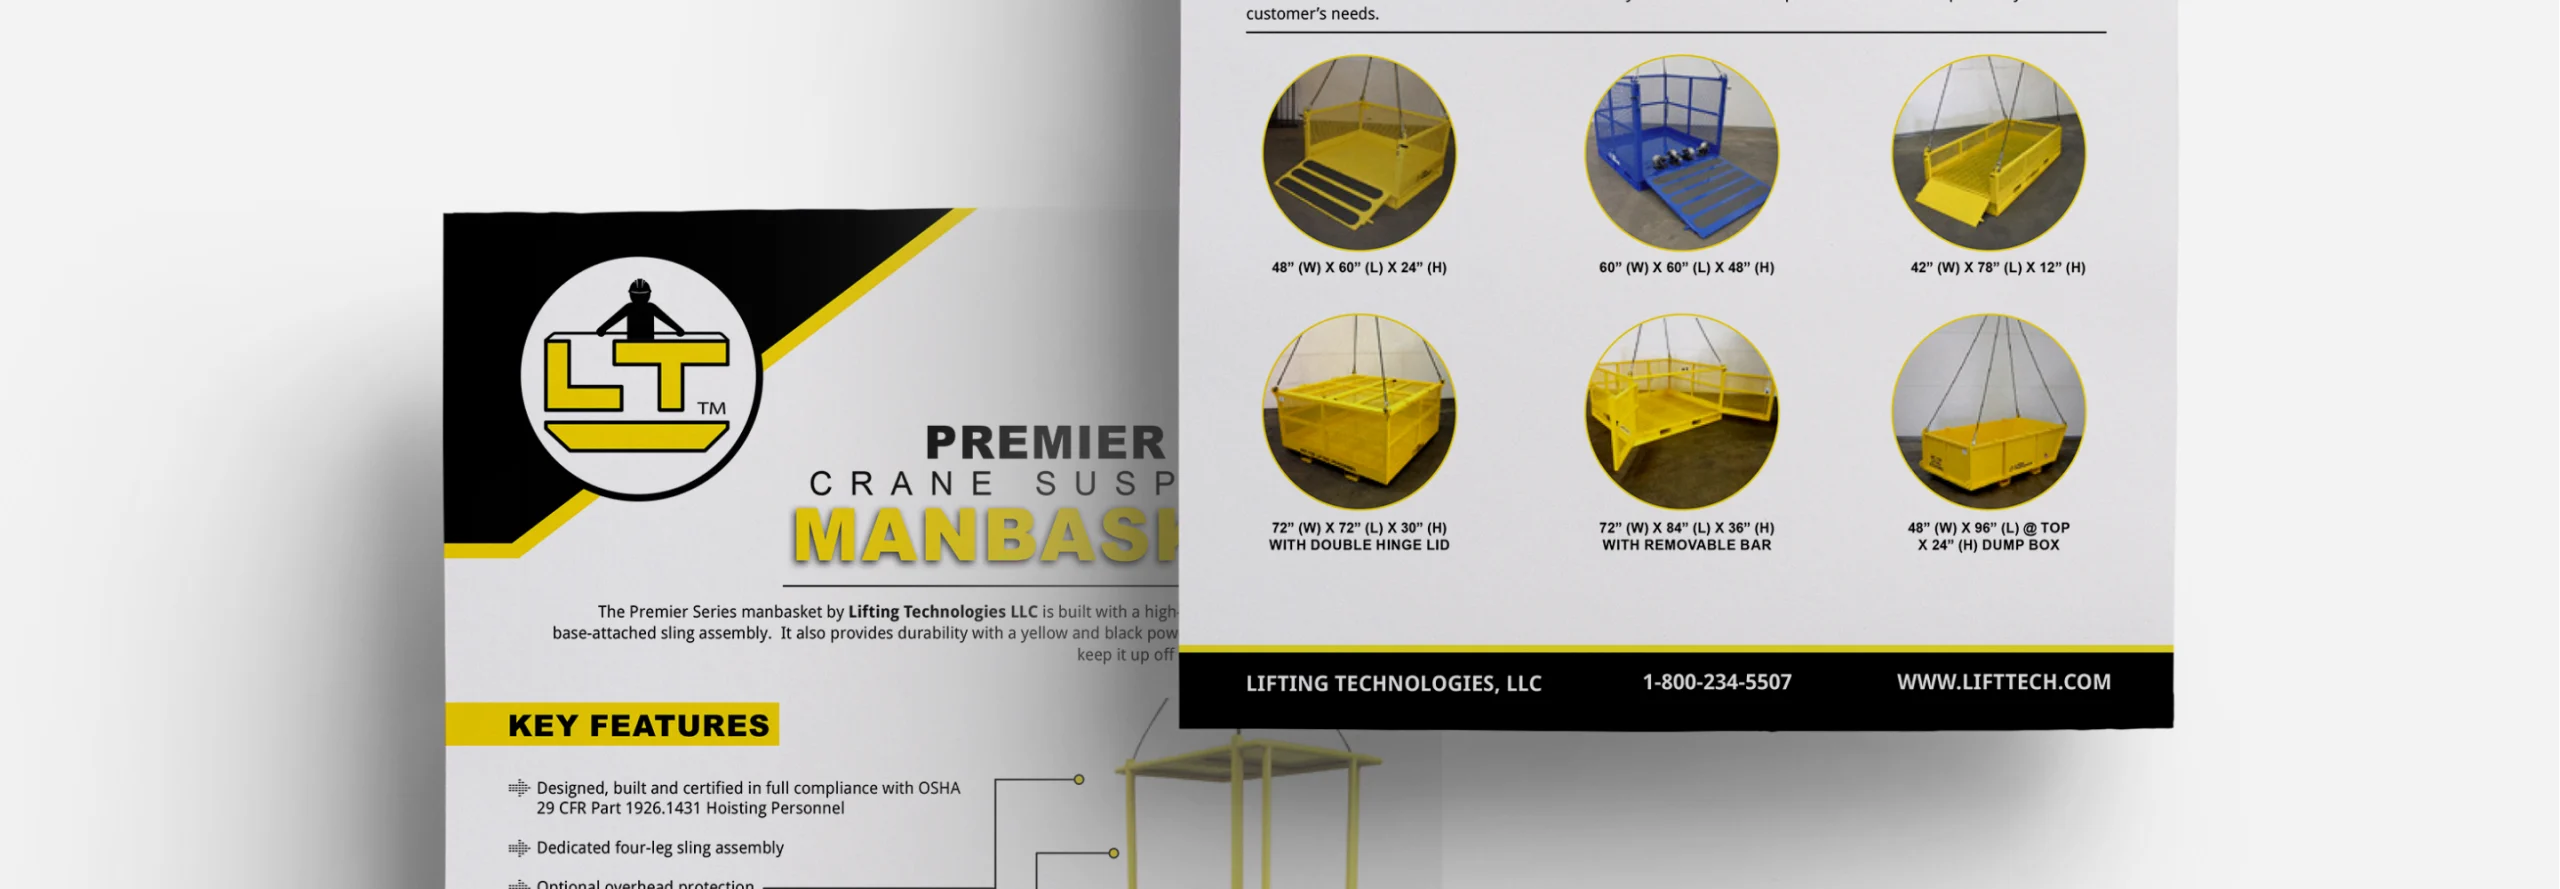 lifttech-cs-sales-pages-design-horizontal